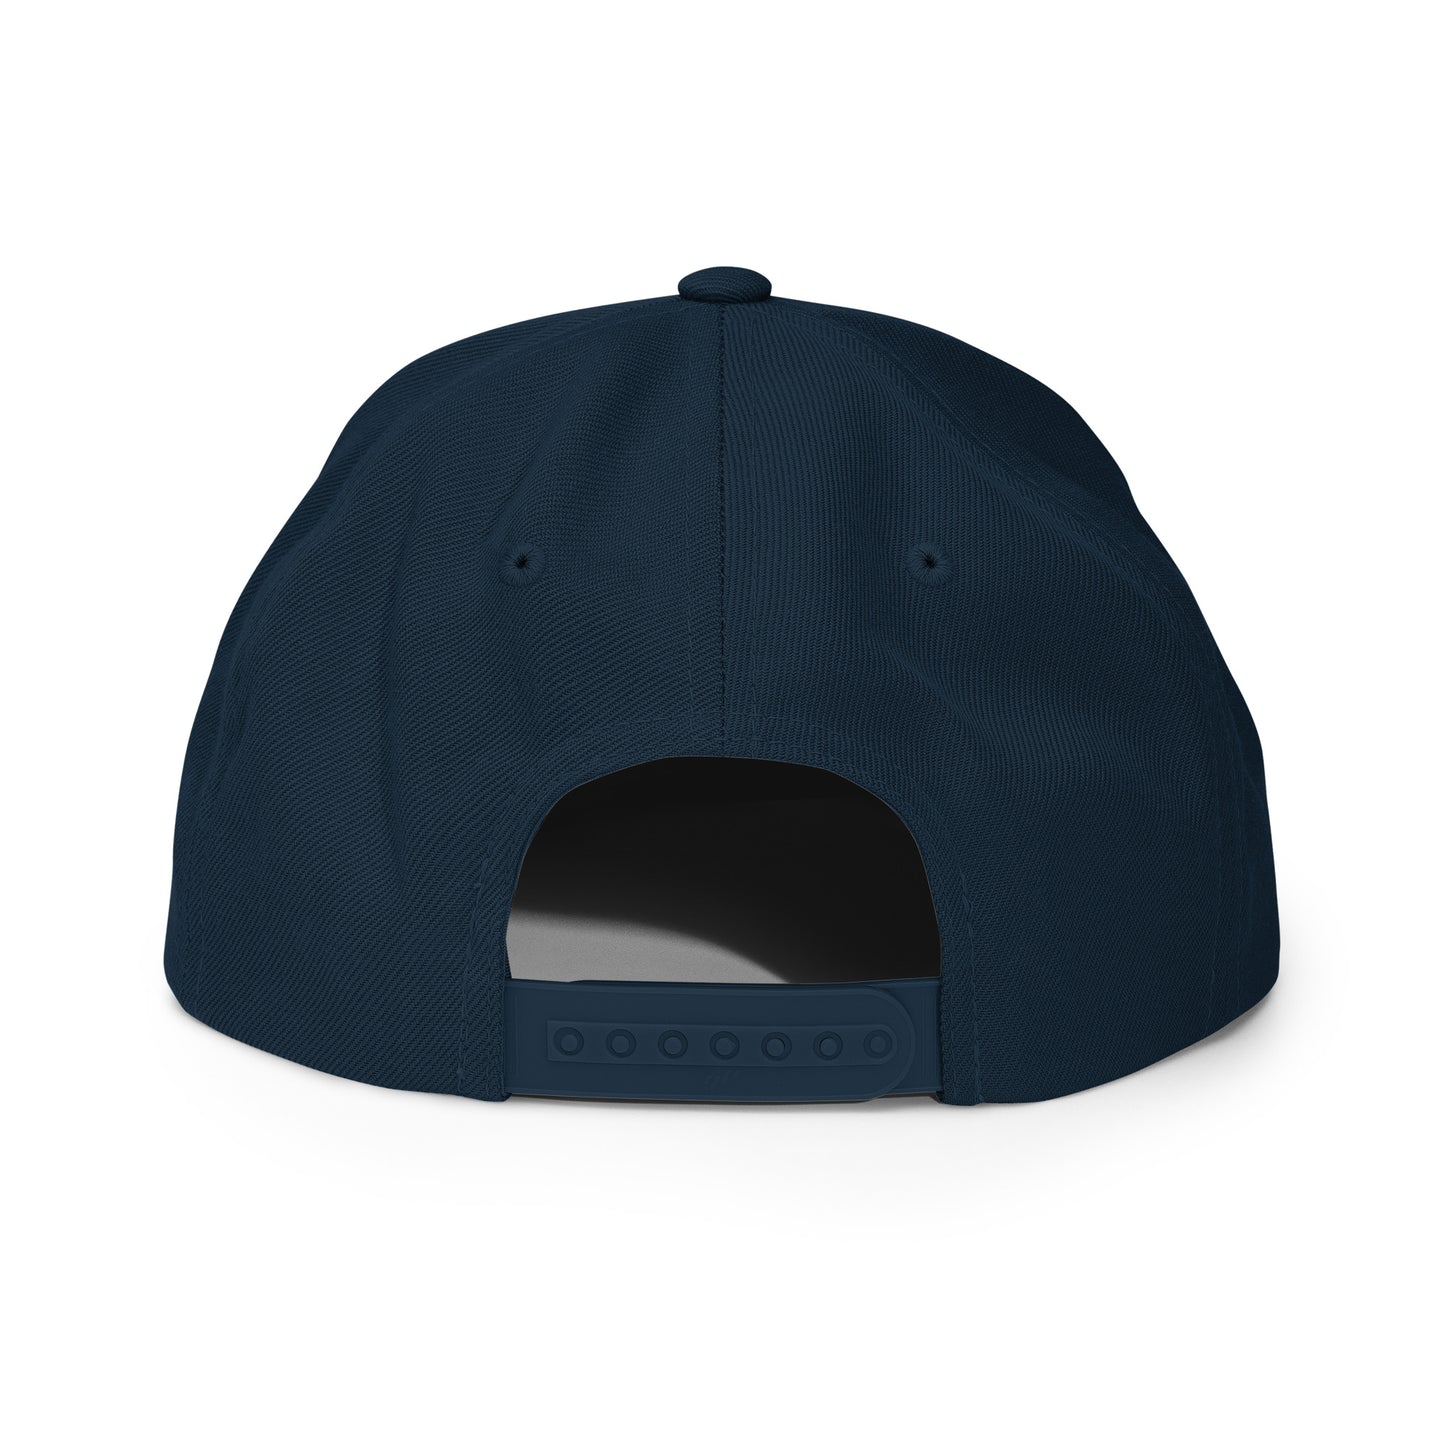 Yahweh Snapback Hat (Unisex)